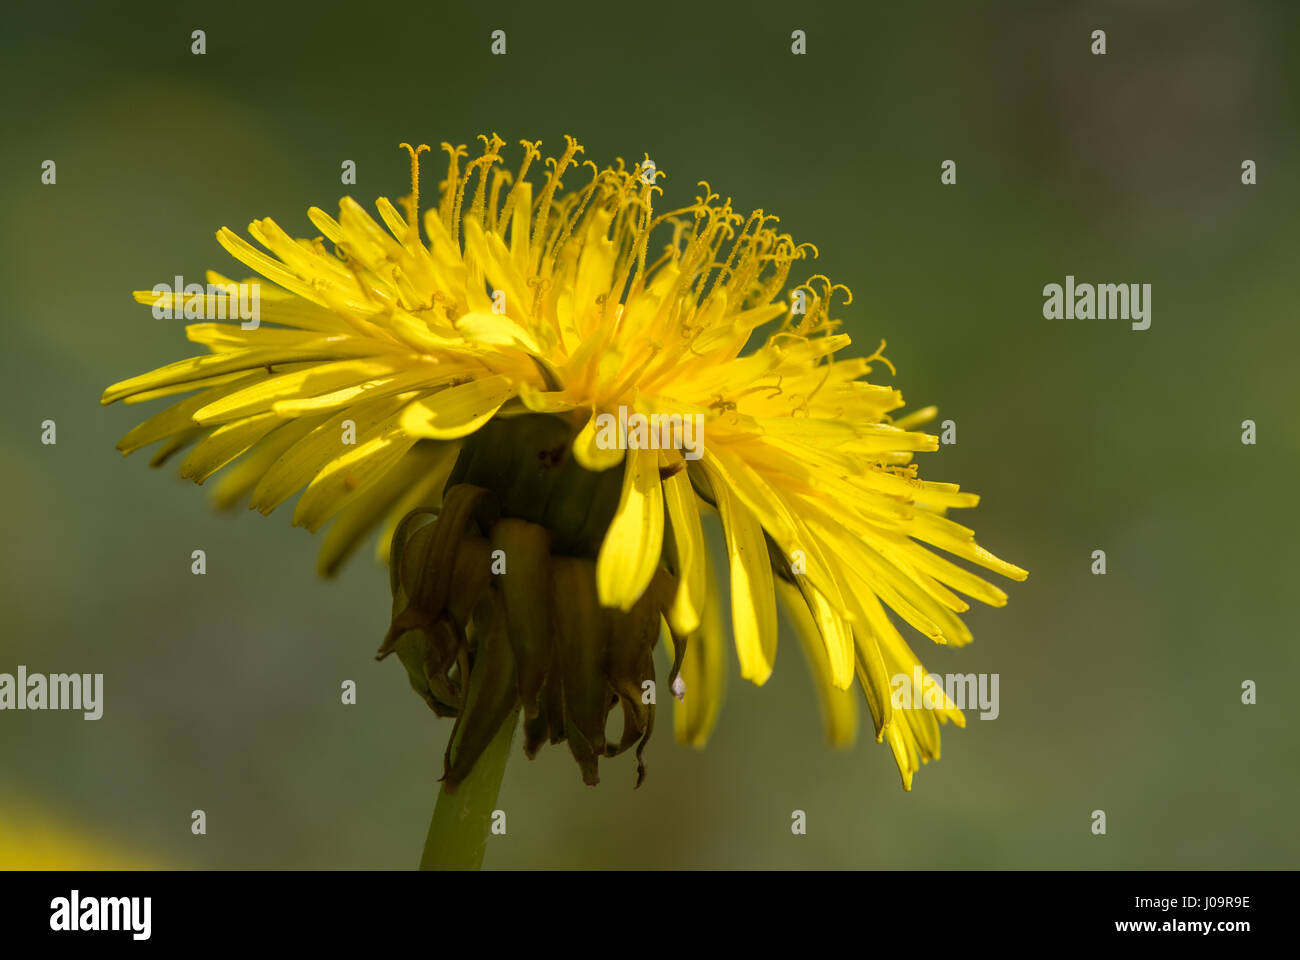 Le pissenlit (Taraxacum officinale agg.) montrant la fleur de étamines jaune commun à la famille (Asteraceae) Banque D'Images